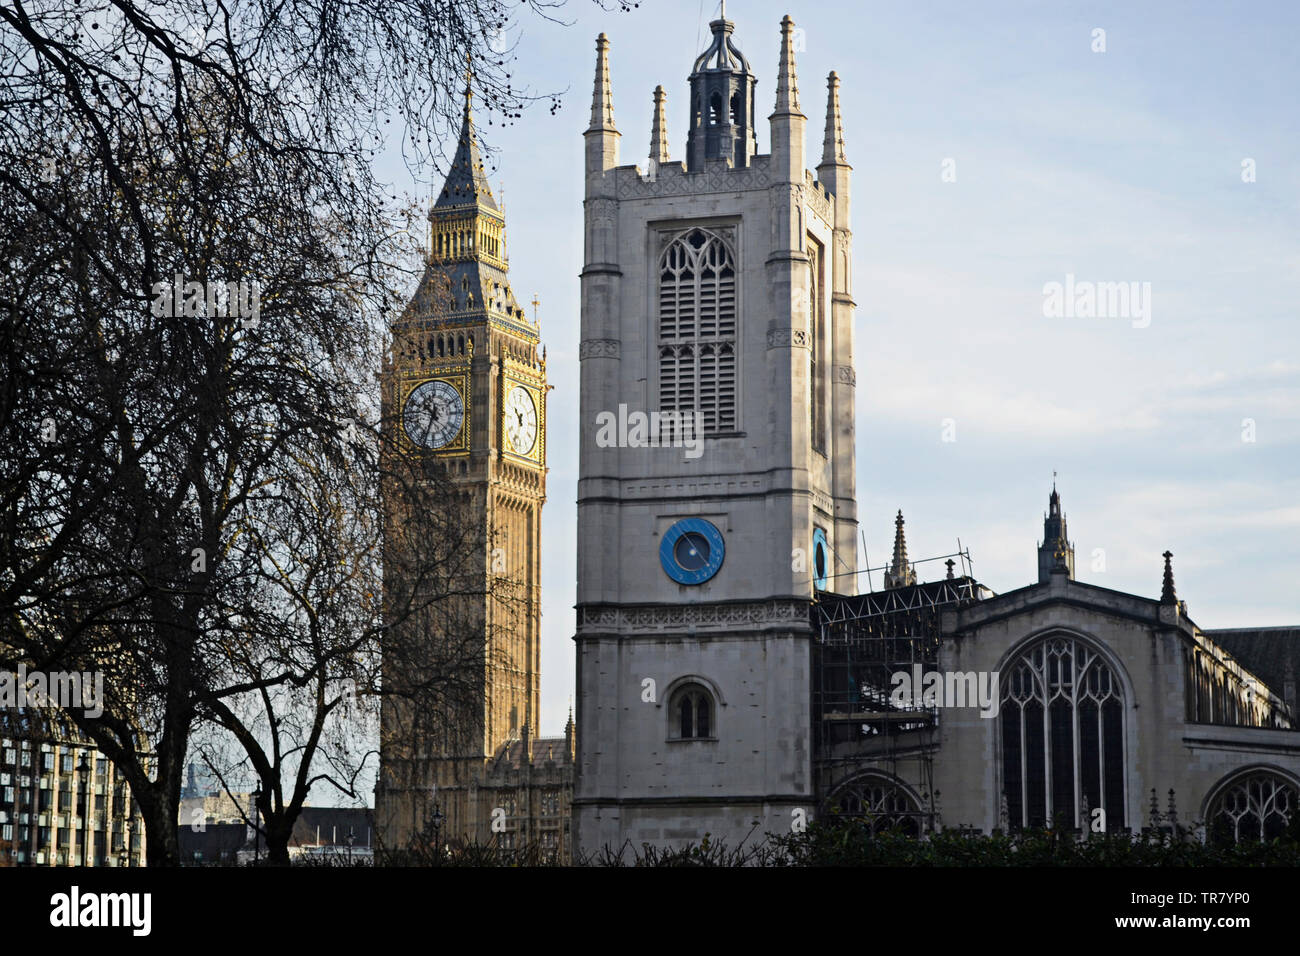 Big Ben bezeichnet die mit 13,5 t Gewicht schwerste der fünf Glocken des berühmten Uhrturms am Palace of Westminster in London. Westminster Abbey. Stock Photo